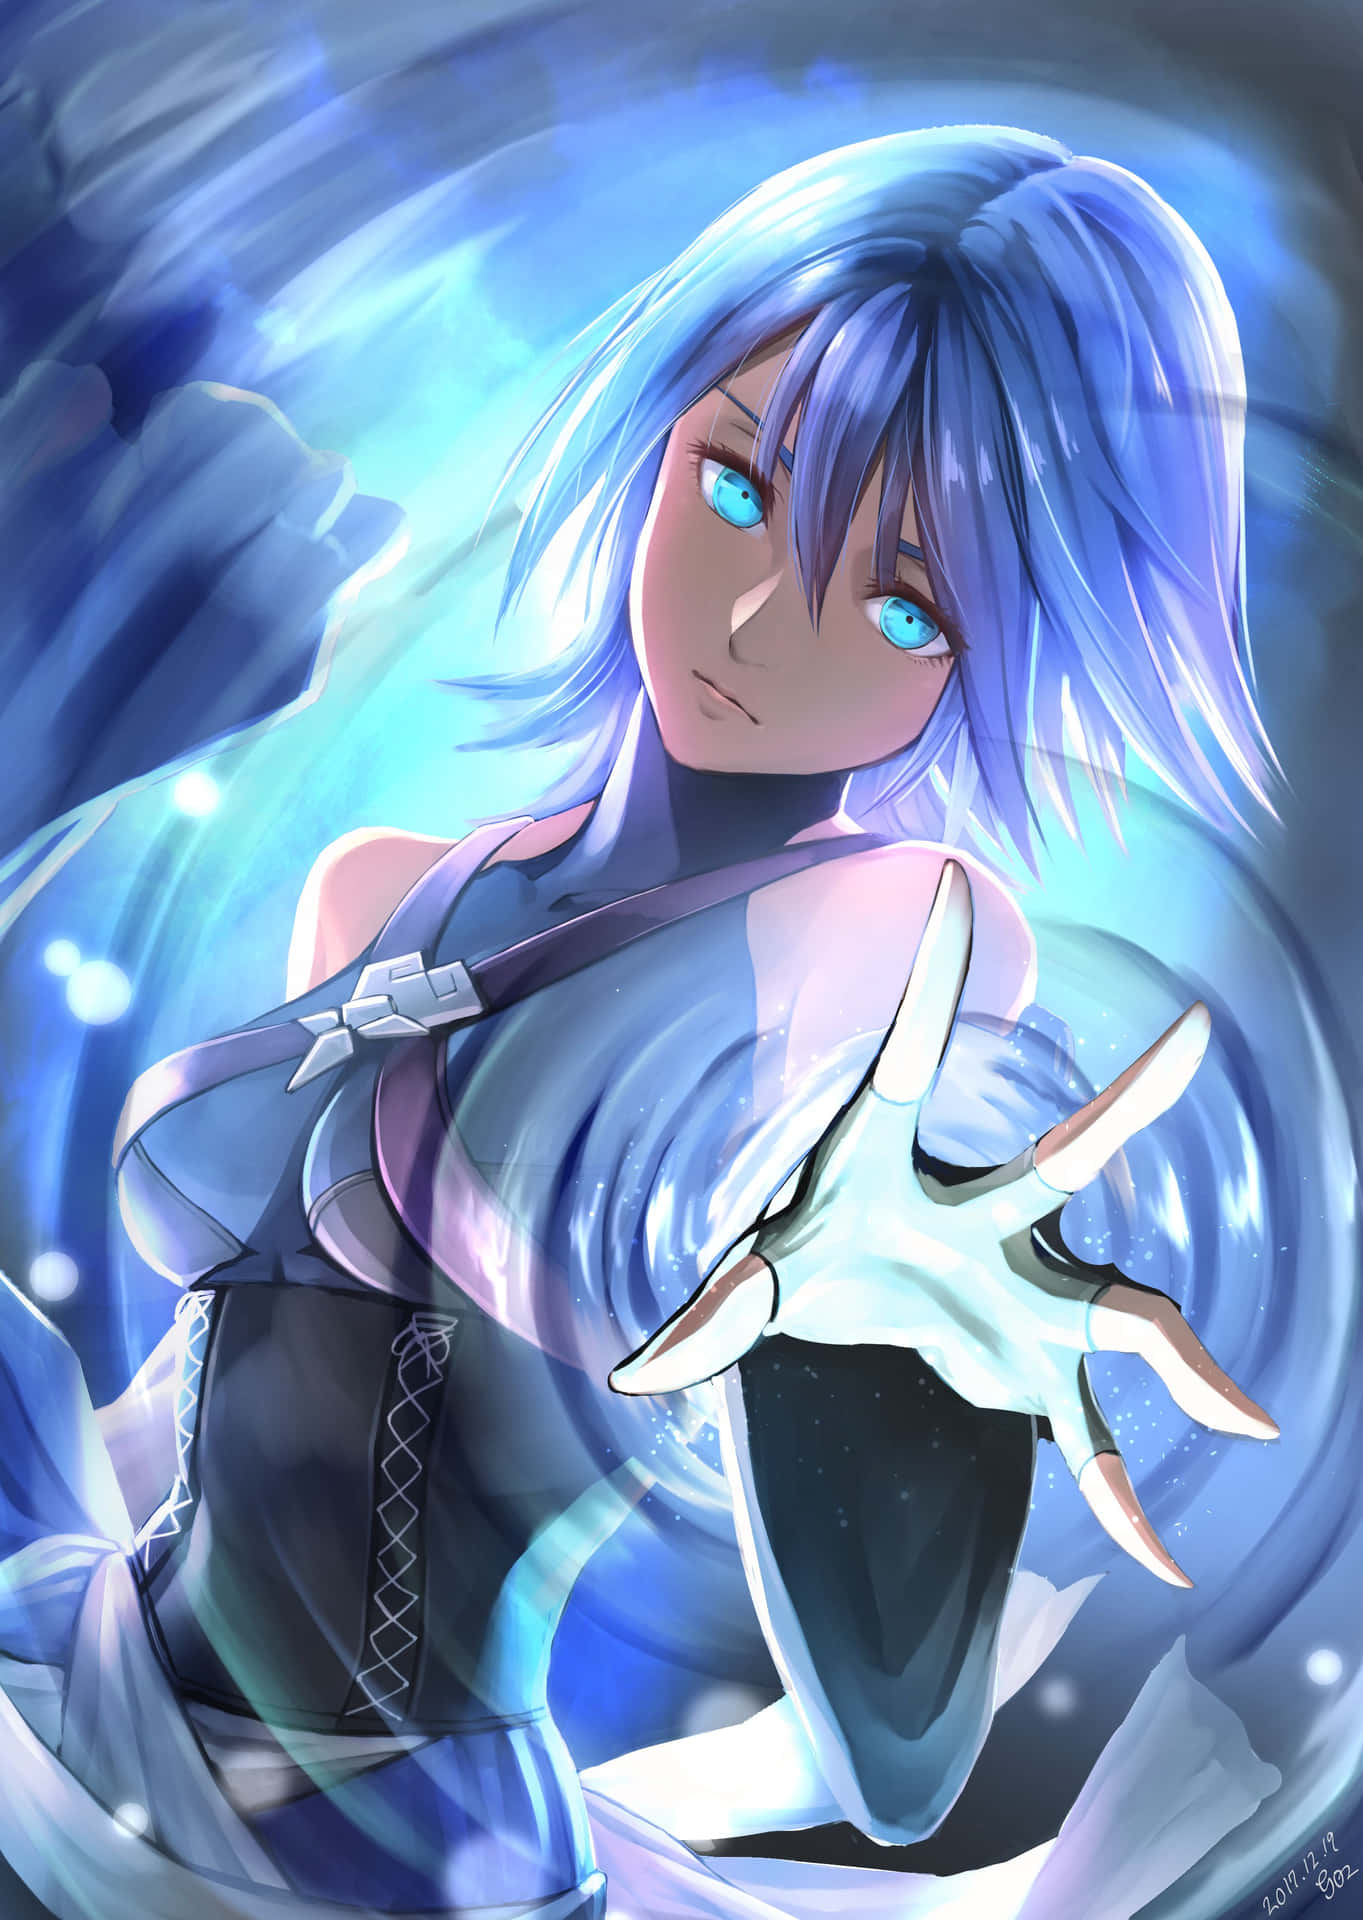 Aqua,uma Protagonista Querida Da Franquia Kingdom Hearts. Papel de Parede